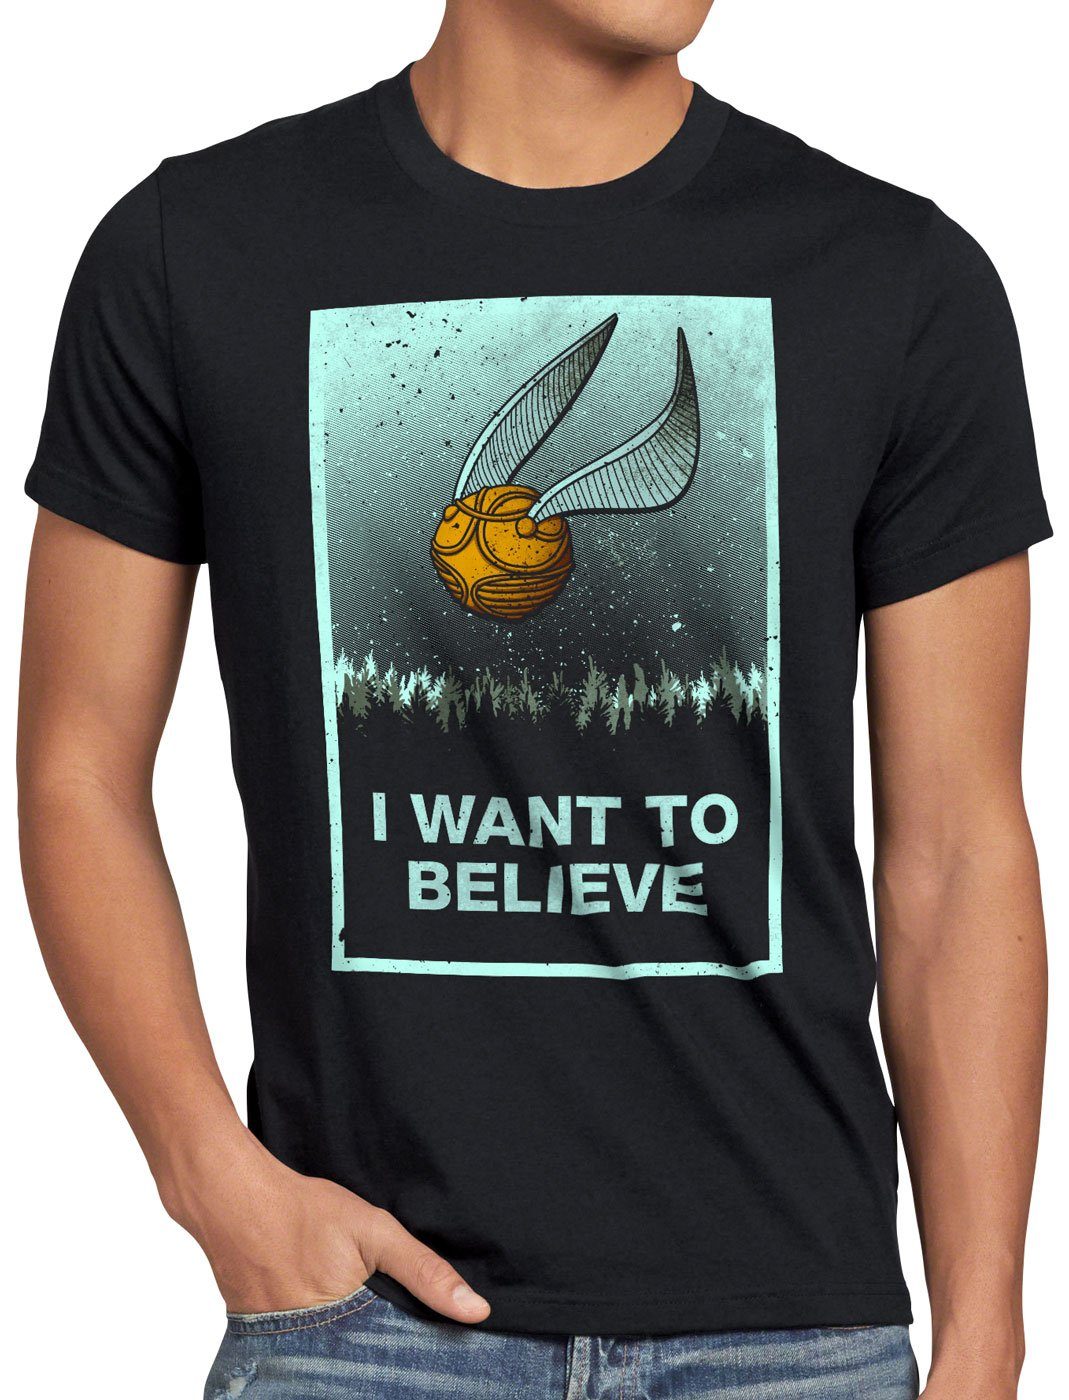 Print-Shirt style3 to turnier besen I Herren T-Shirt sport quidditch believe want Schnatz